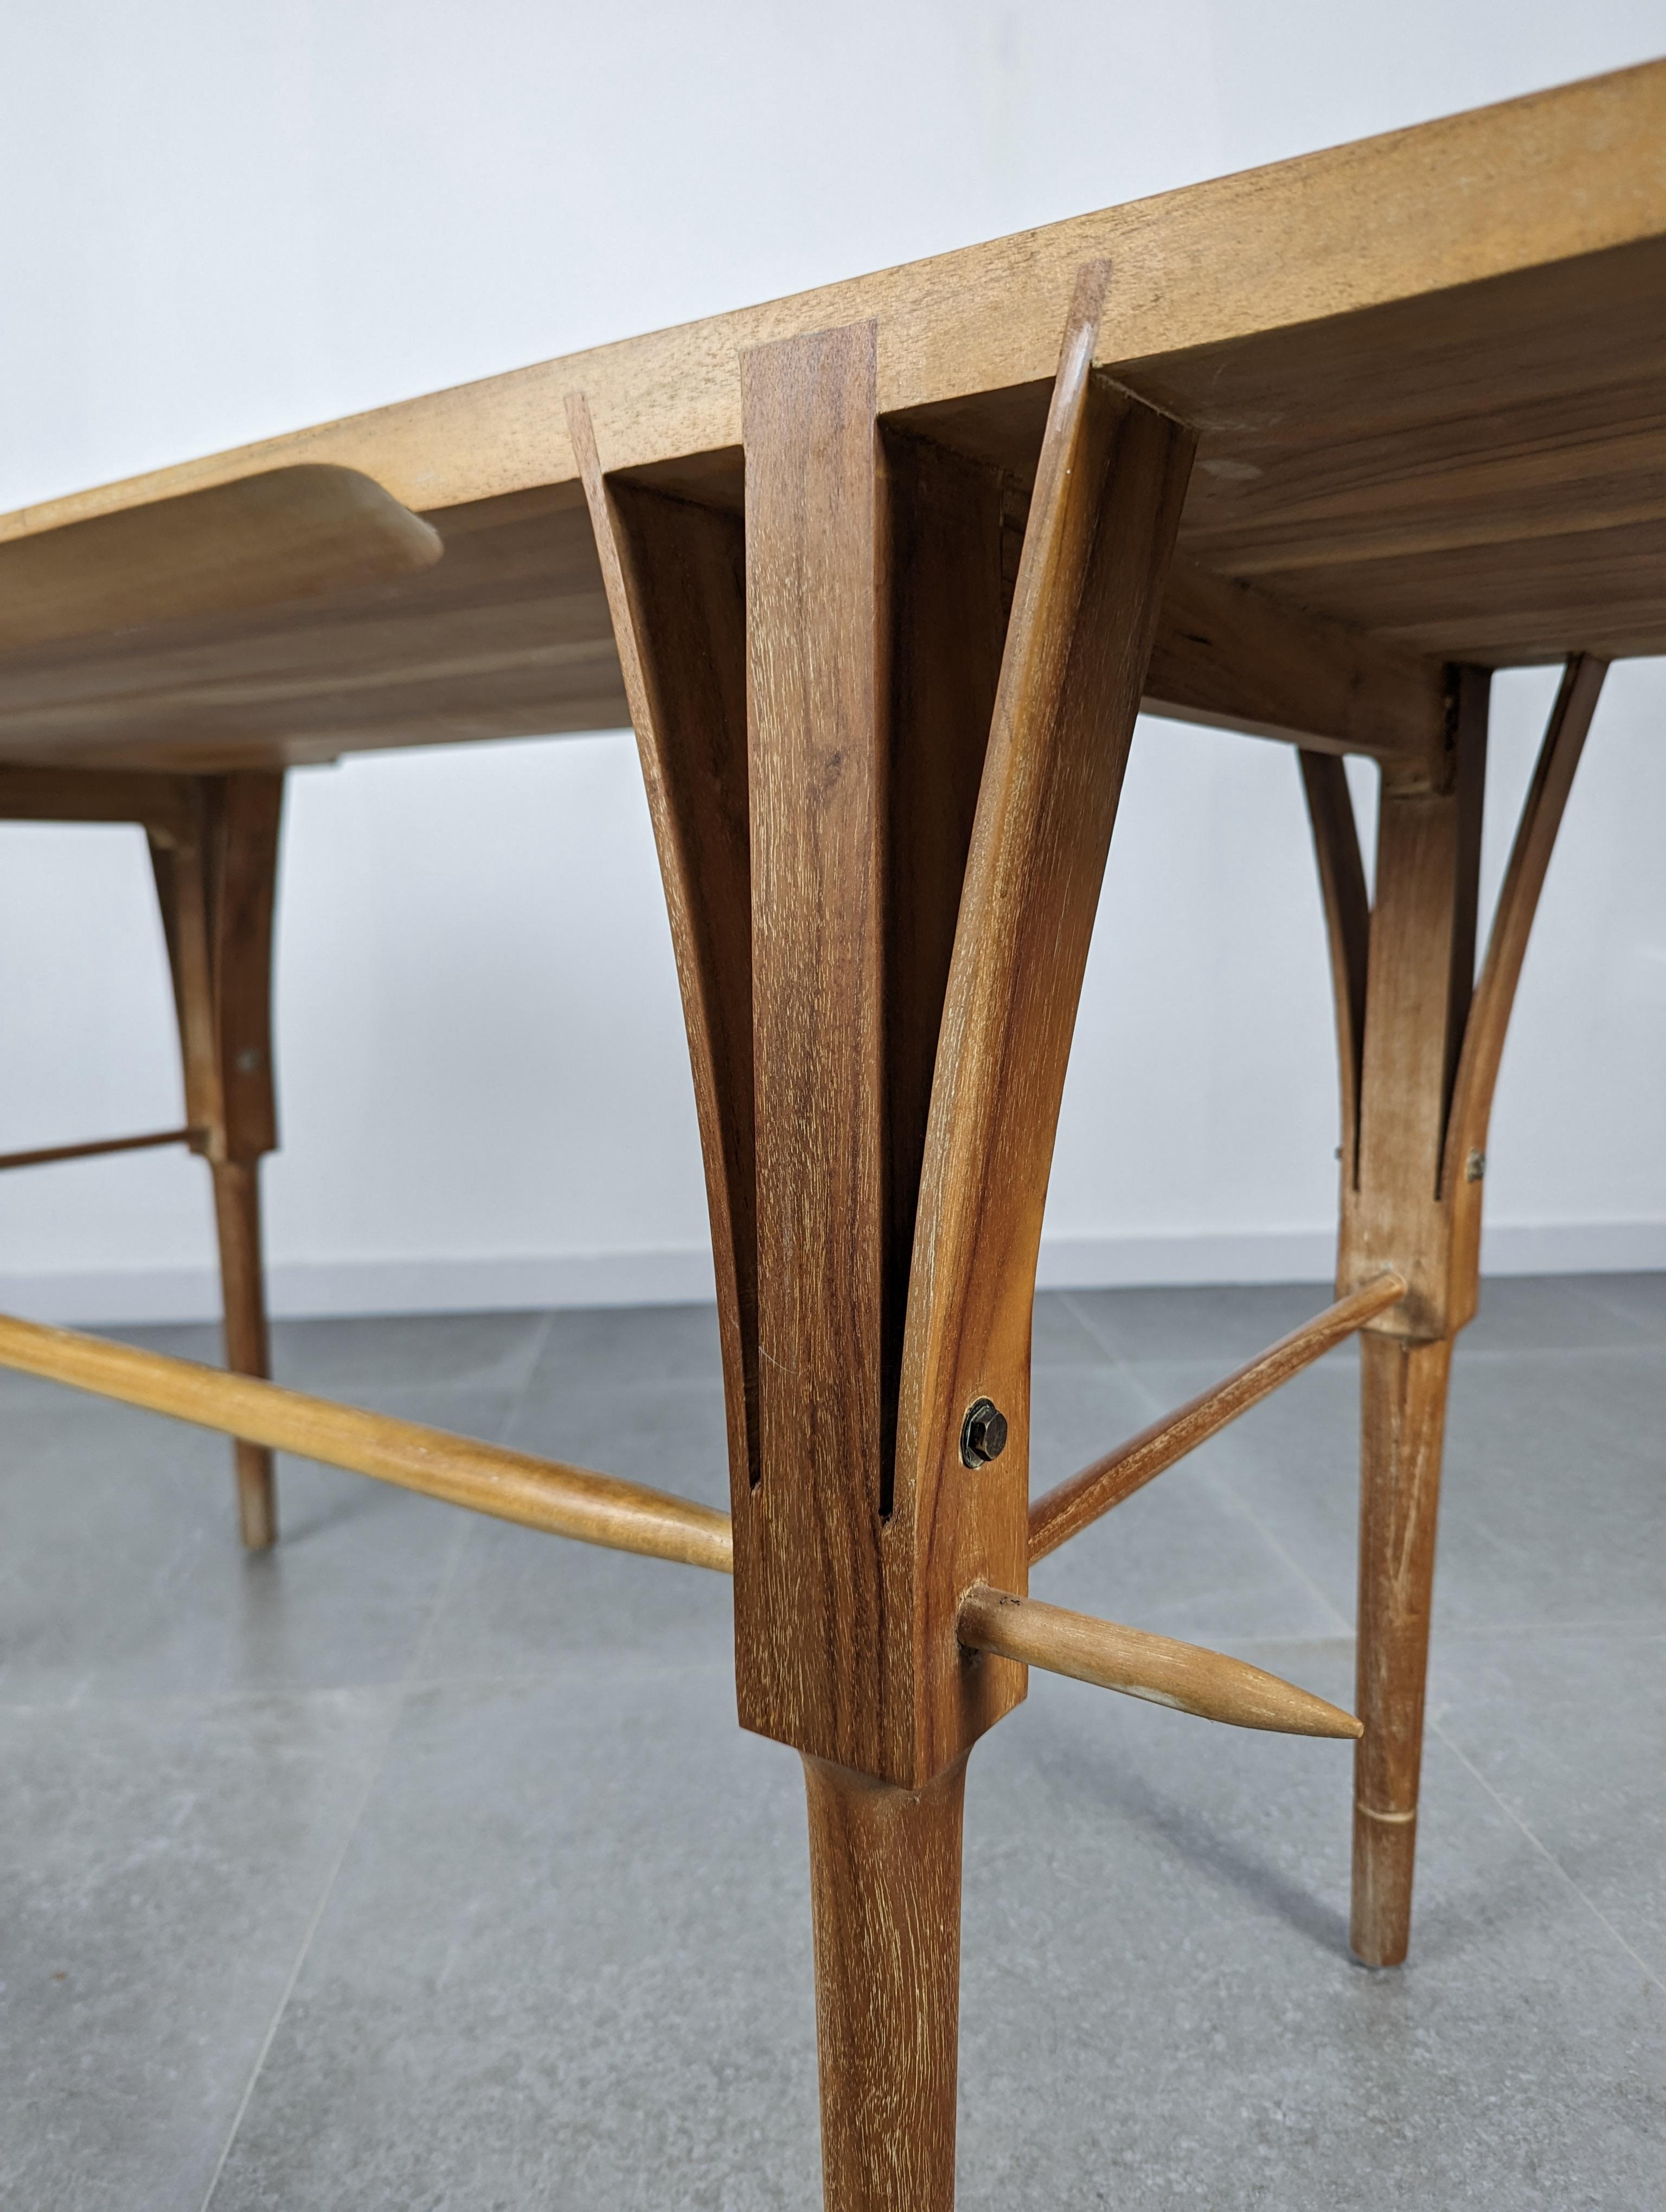 Exklusiver Holztisch, der dem bedeutenden dänischen Designer und Architekten Sven Ellekaer zugeschrieben wird. Das unverwechselbare Design von Ellekaer mit seinem V-förmig geschwungenen Holz und der präzisen Verbindung zwischen den Teilen zeigt die